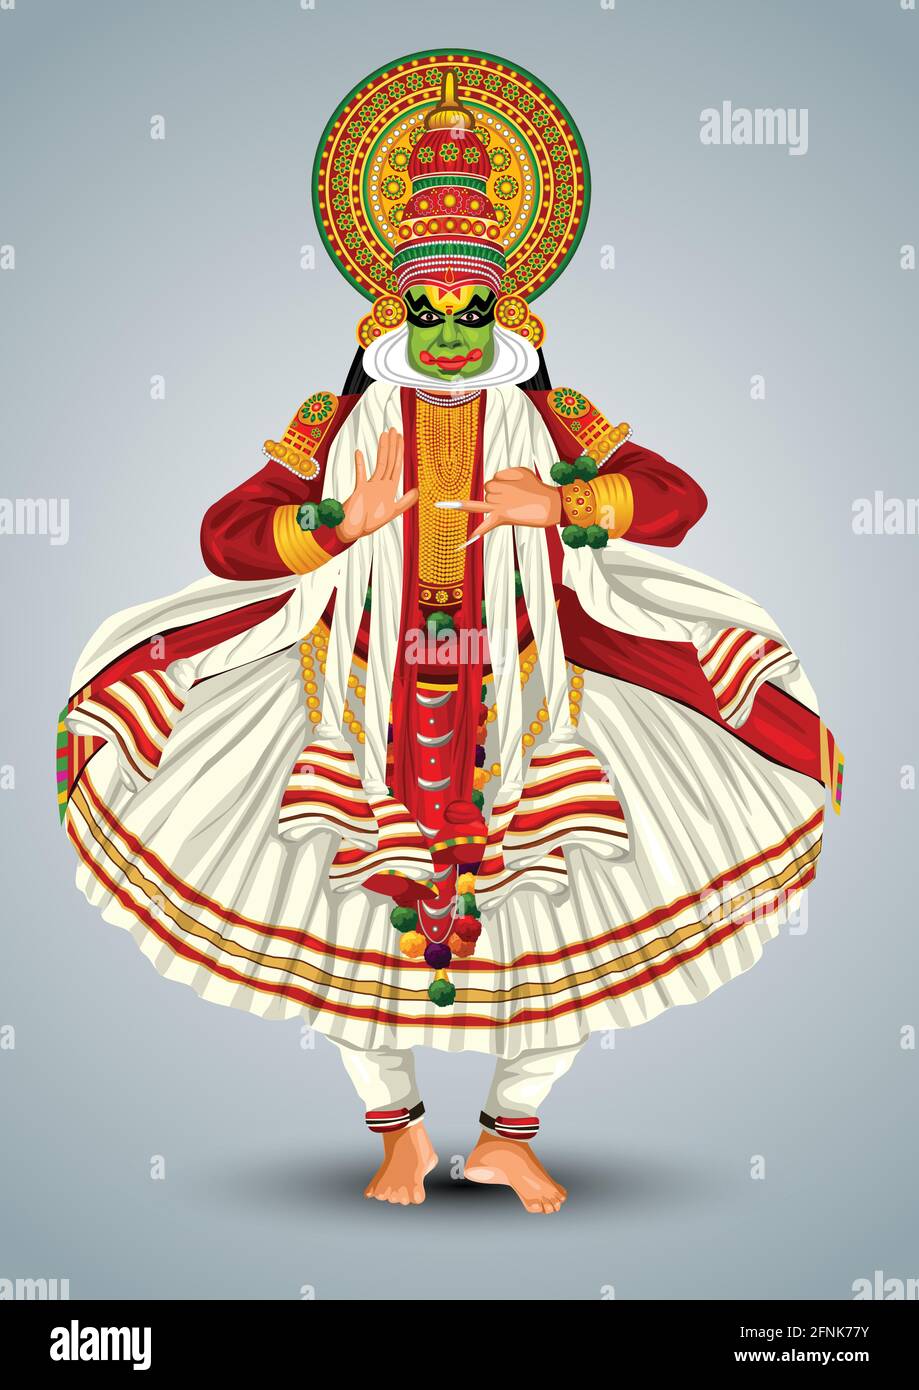 Kerala traditional folk dance kathakali full size vector ...